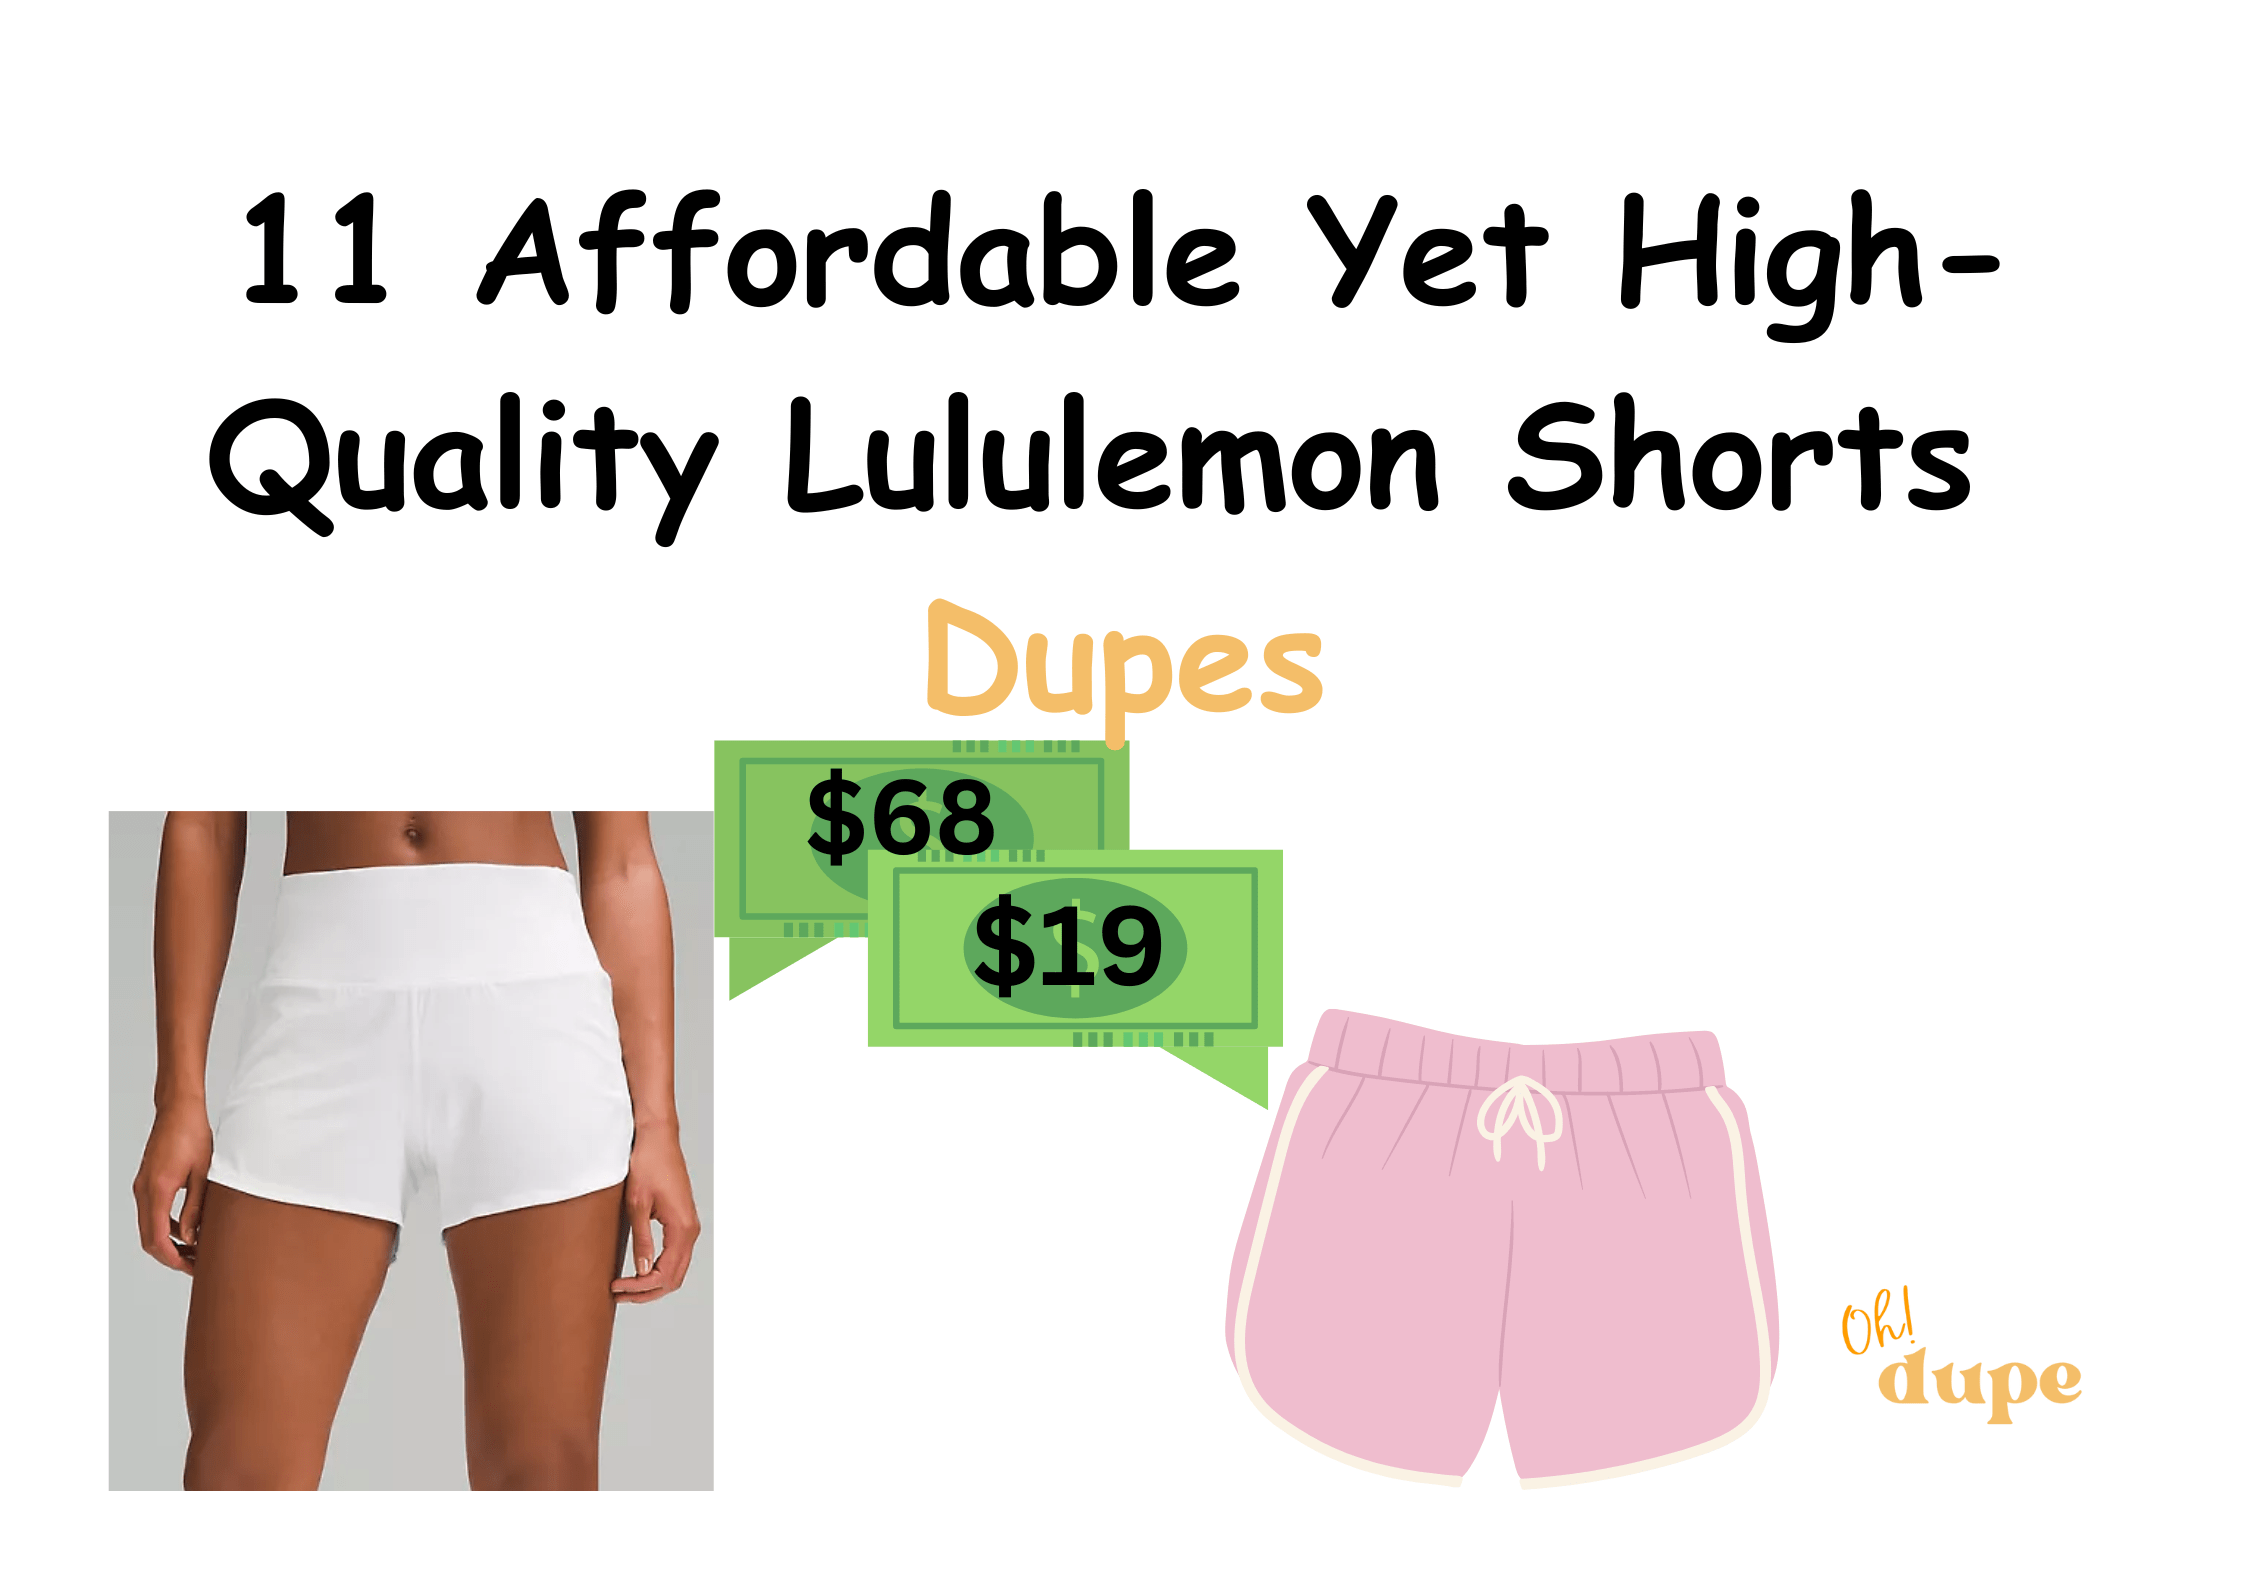 Lululemon Shorts Dupe